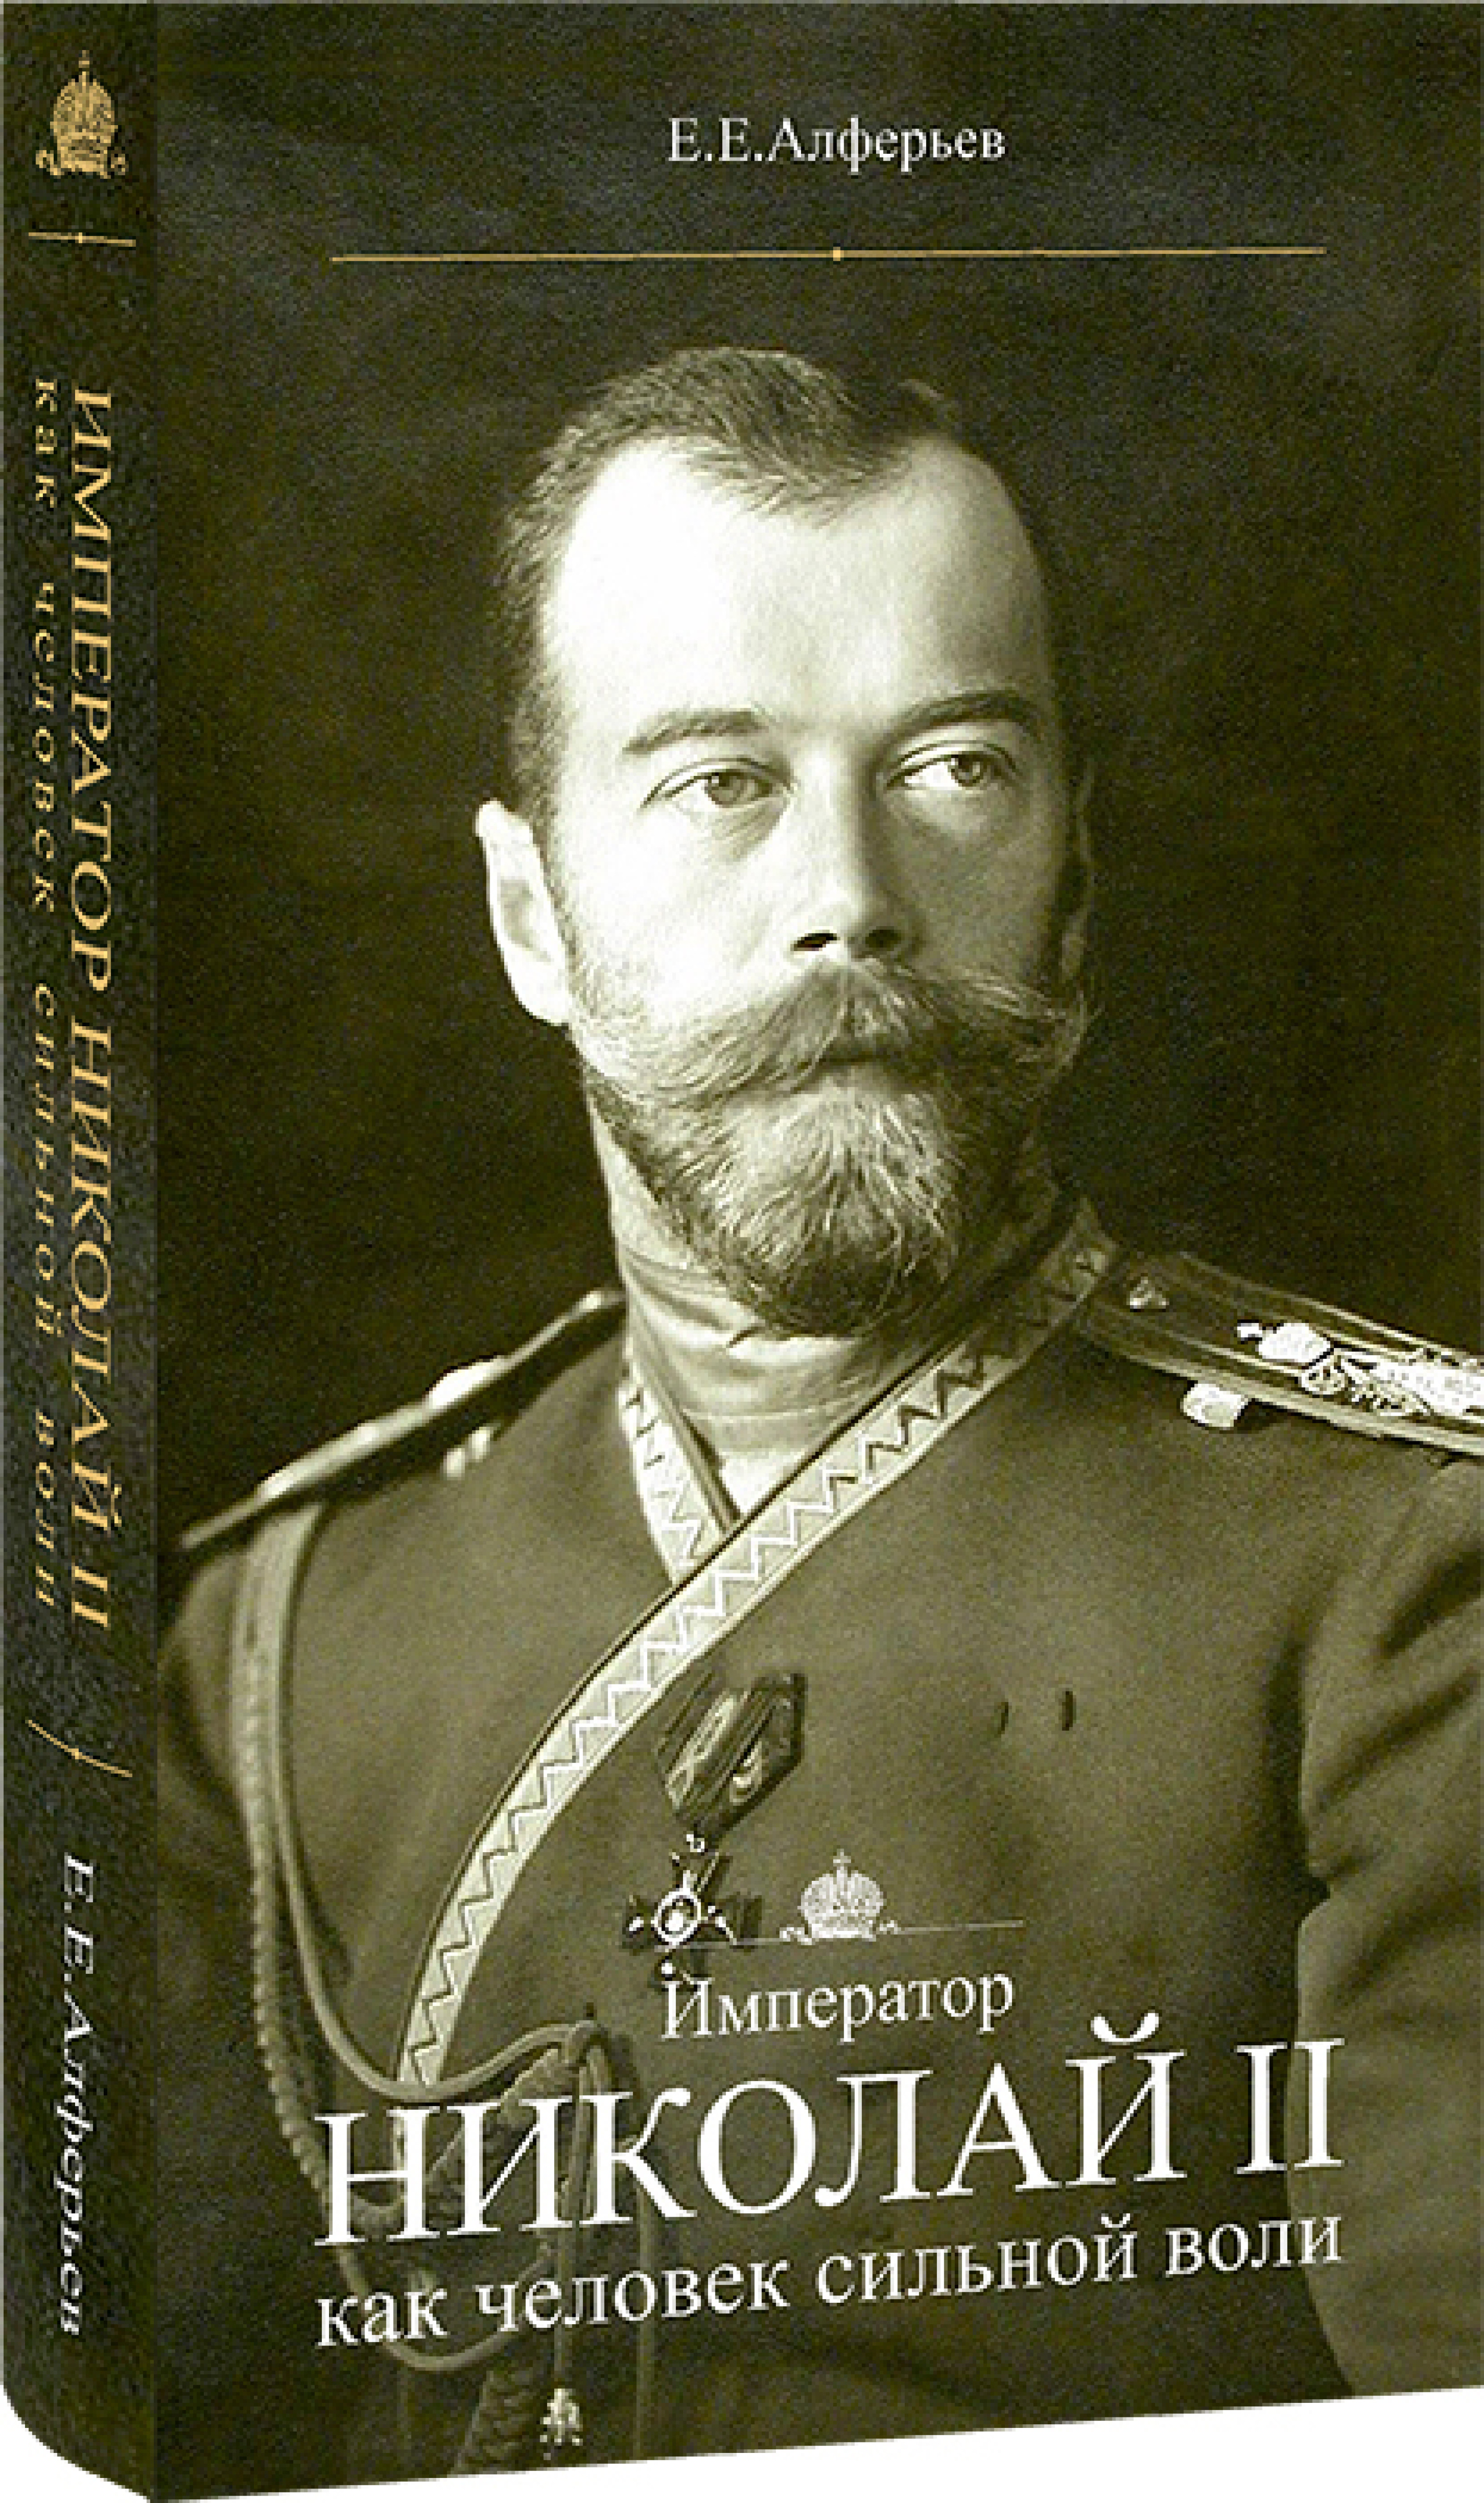 Император Николай II как человек сильной воли - фото